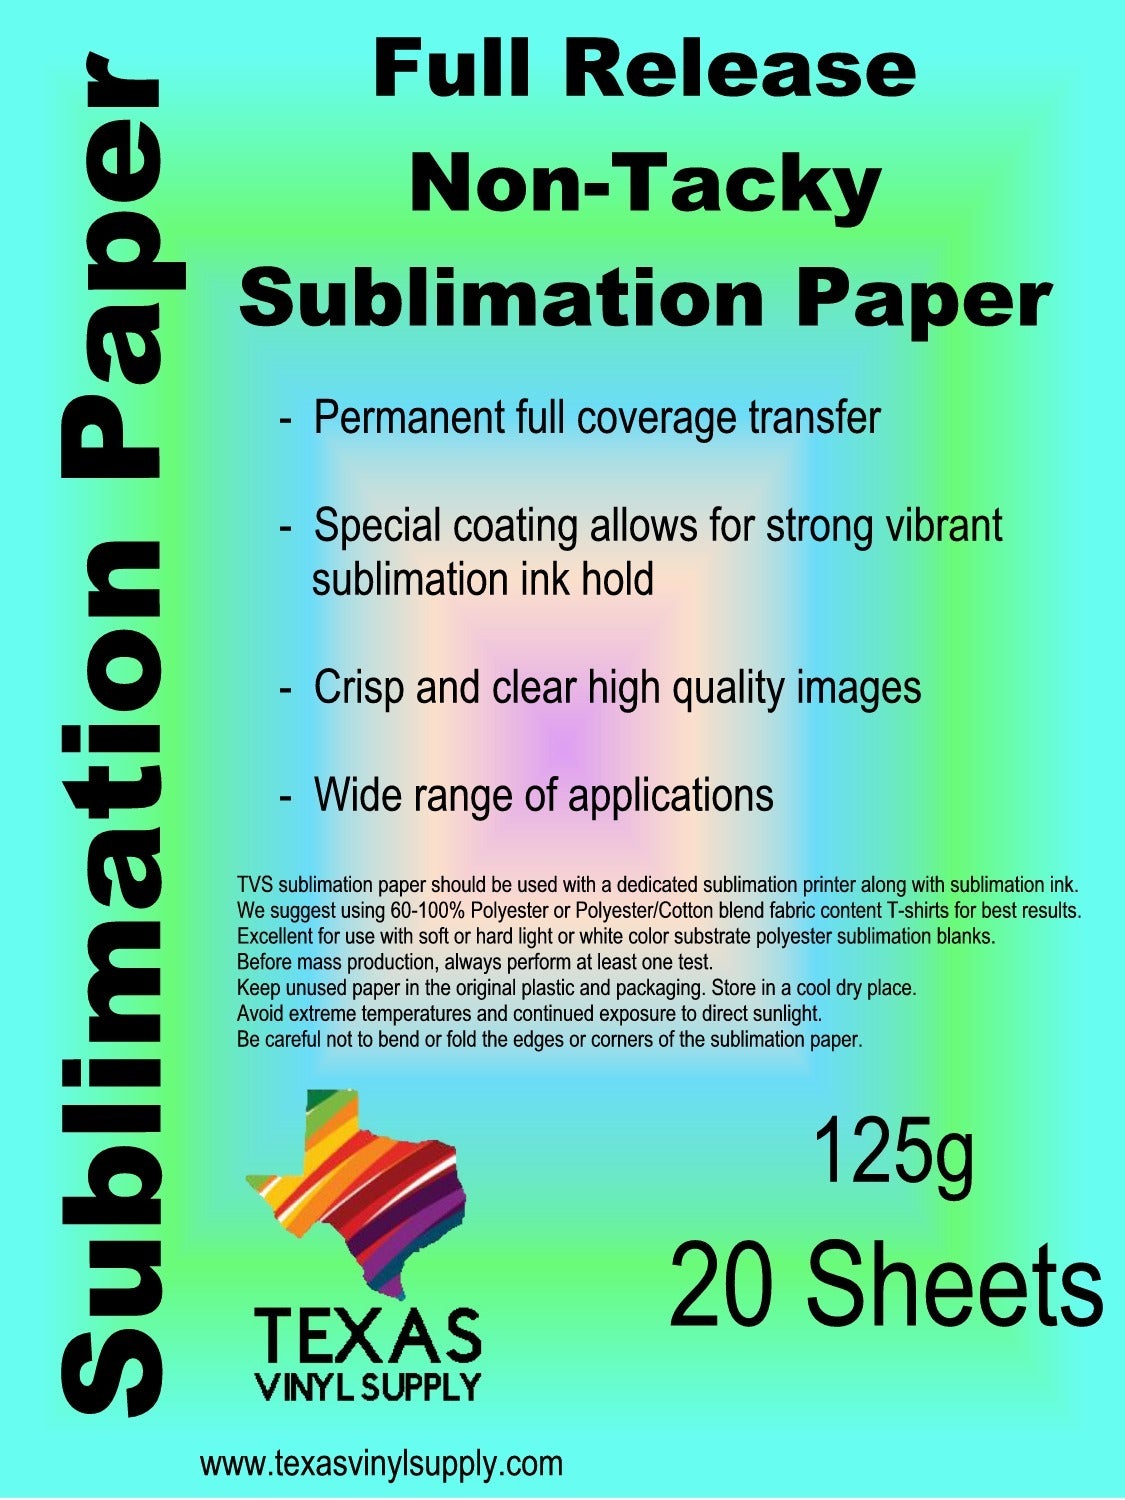 We Sub'N ™️Dye Sublimation Paper for Desktops (pink is back side)